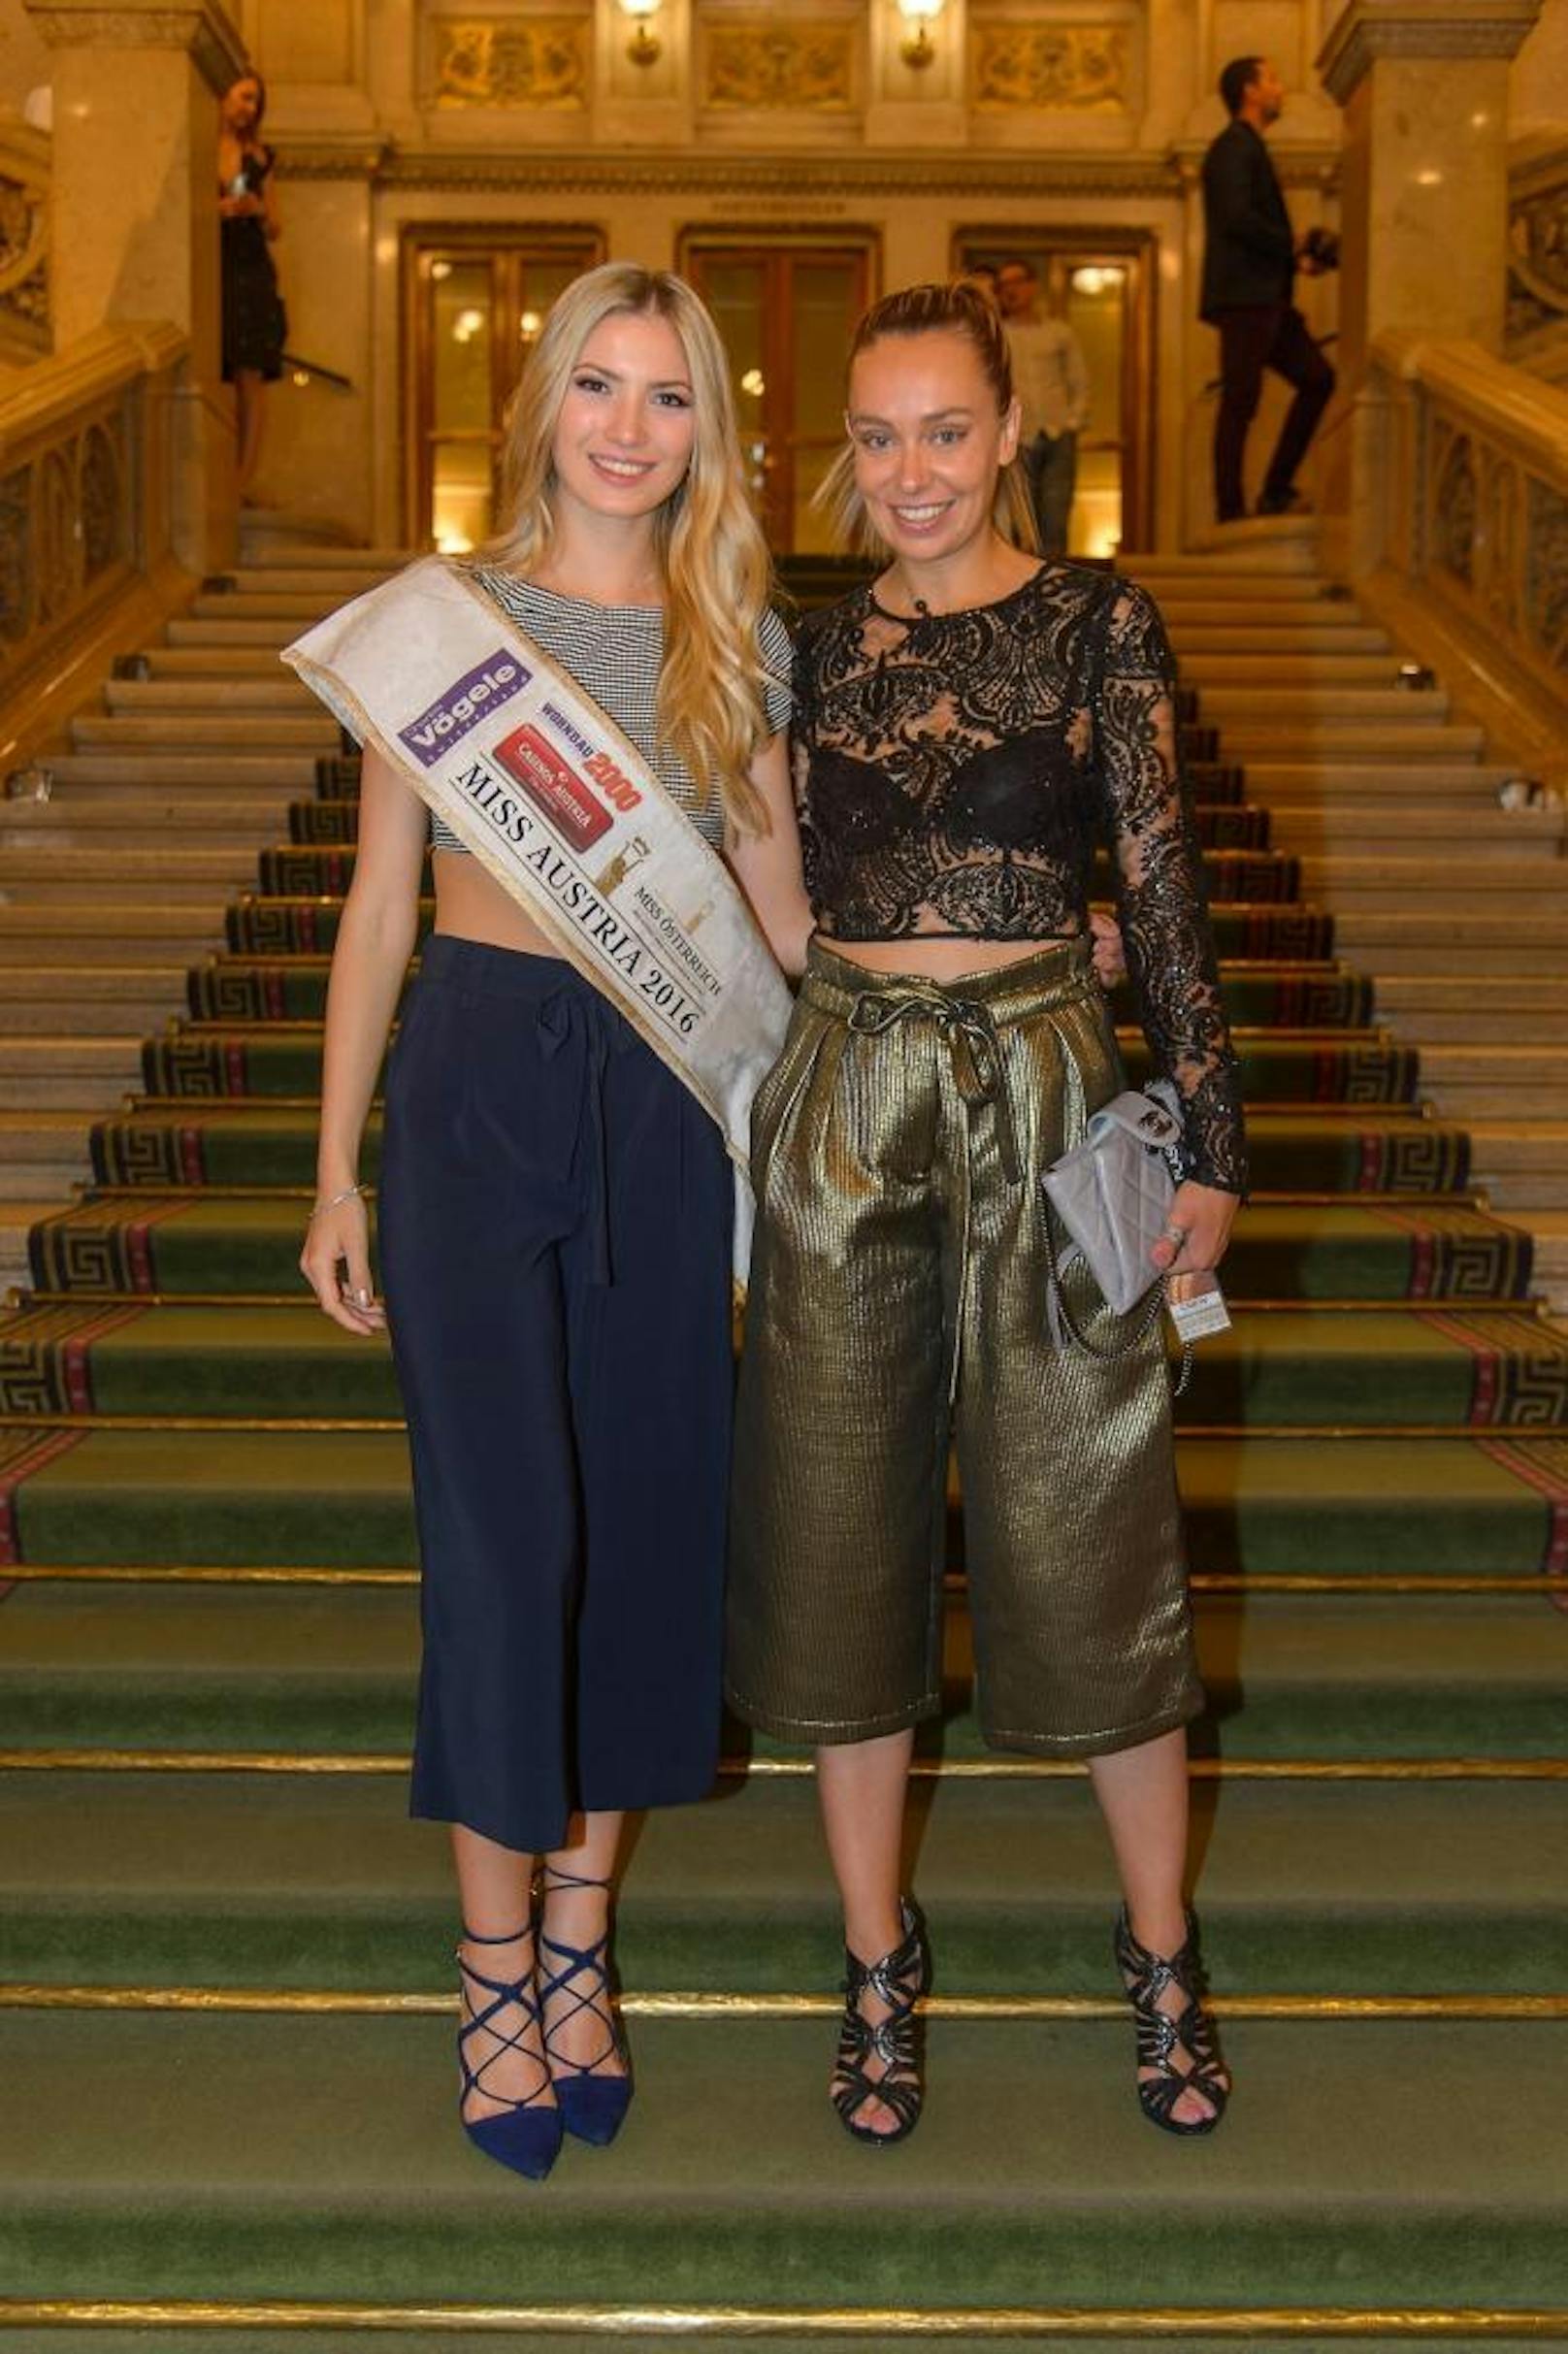 Eine Woche später, am 09. Juli empfängt Klein dann Gäste wie Miss-Austria Dragana Stankovic in der Oper zum Shopping-Highlight.